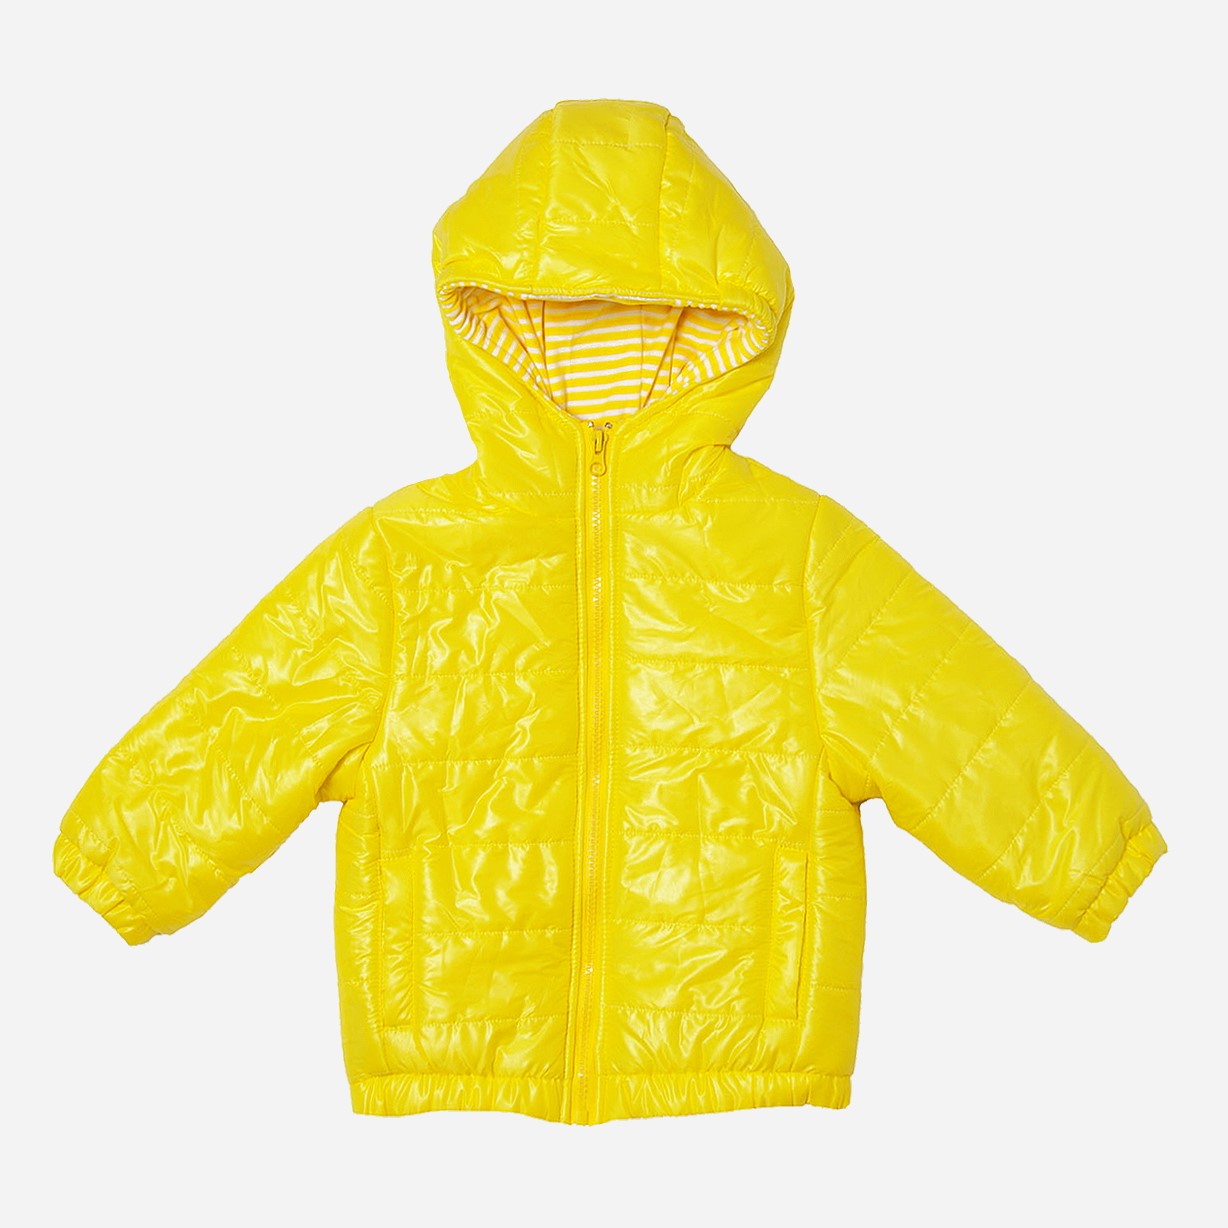 Акция на Демисезонная куртка Danaya ШЯ19-192 98 см Желтая (2000014442184) от Rozetka UA